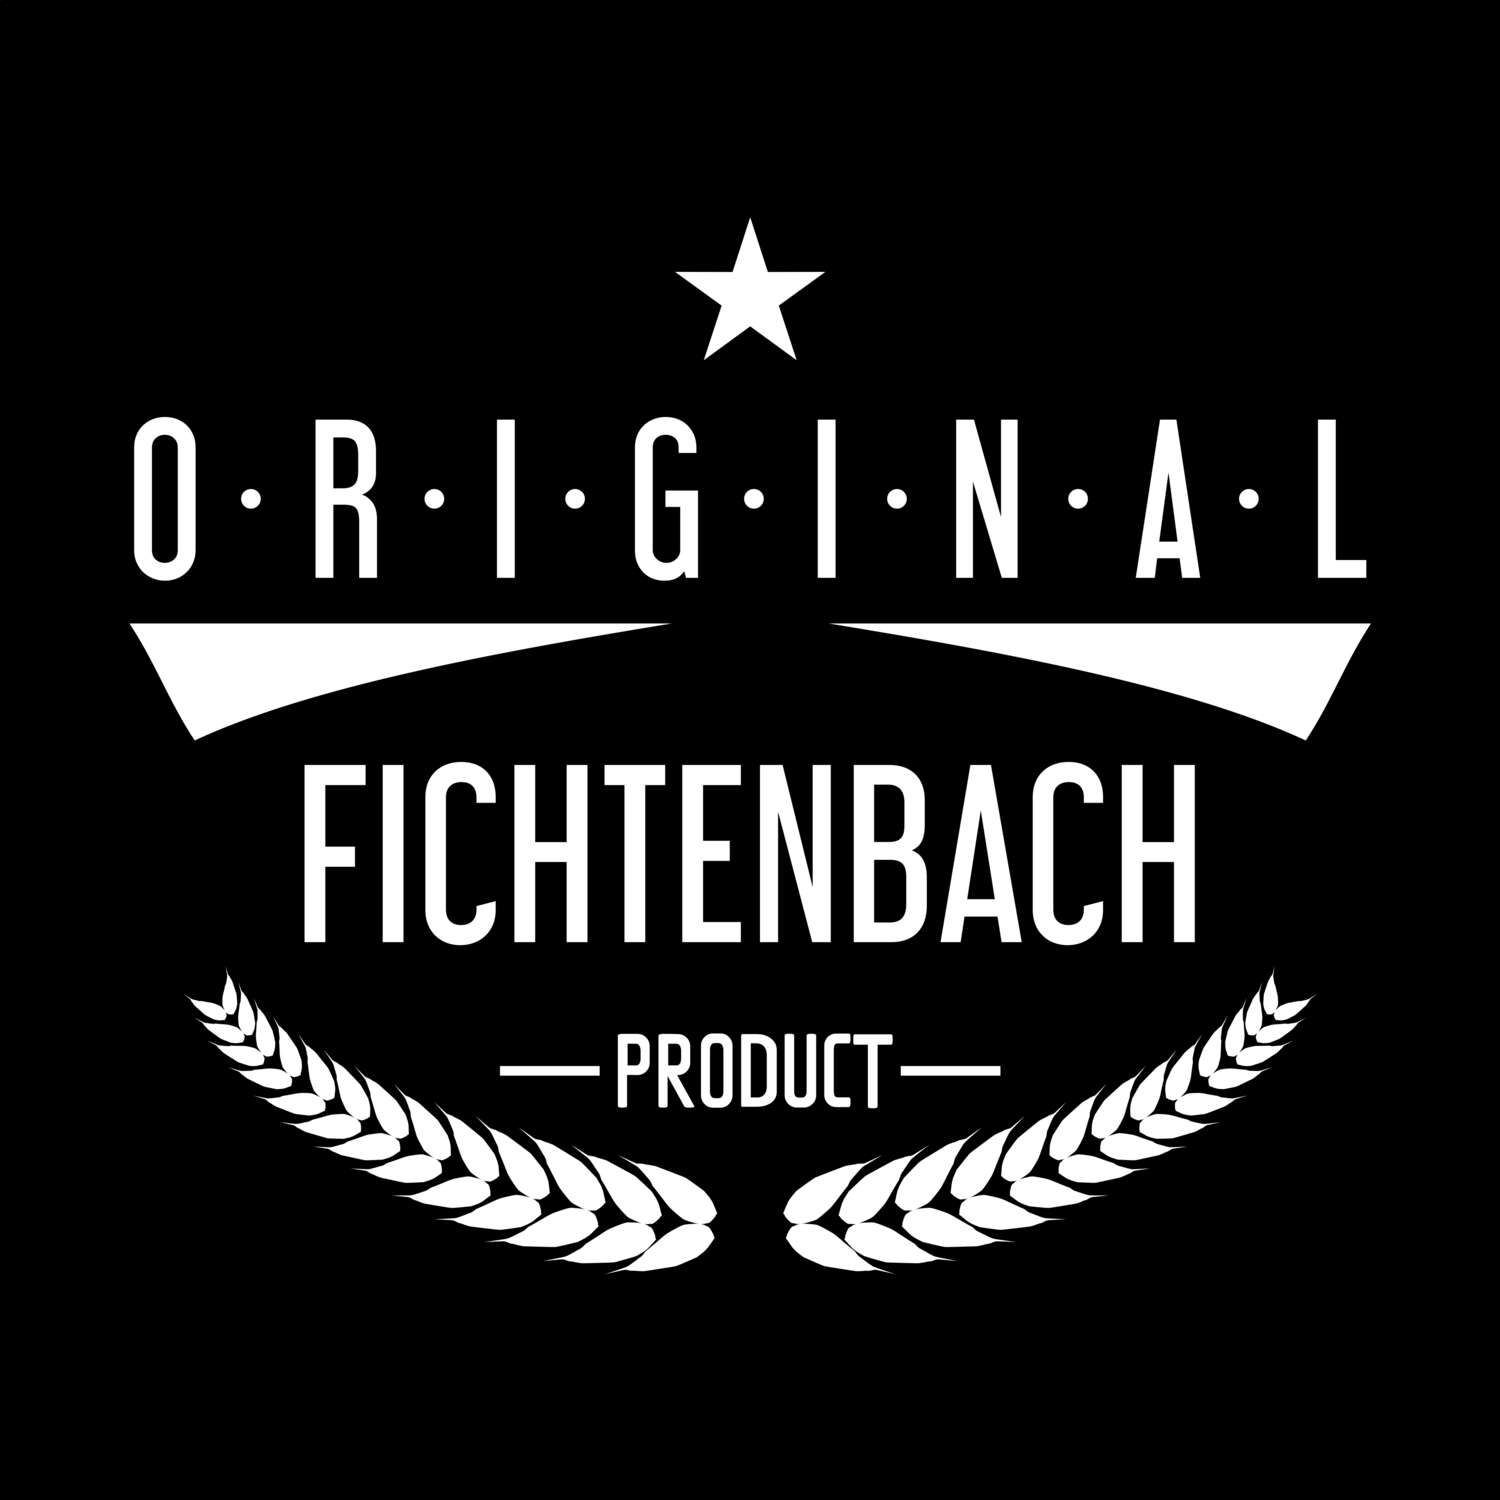 Fichtenbach T-Shirt »Original Product«